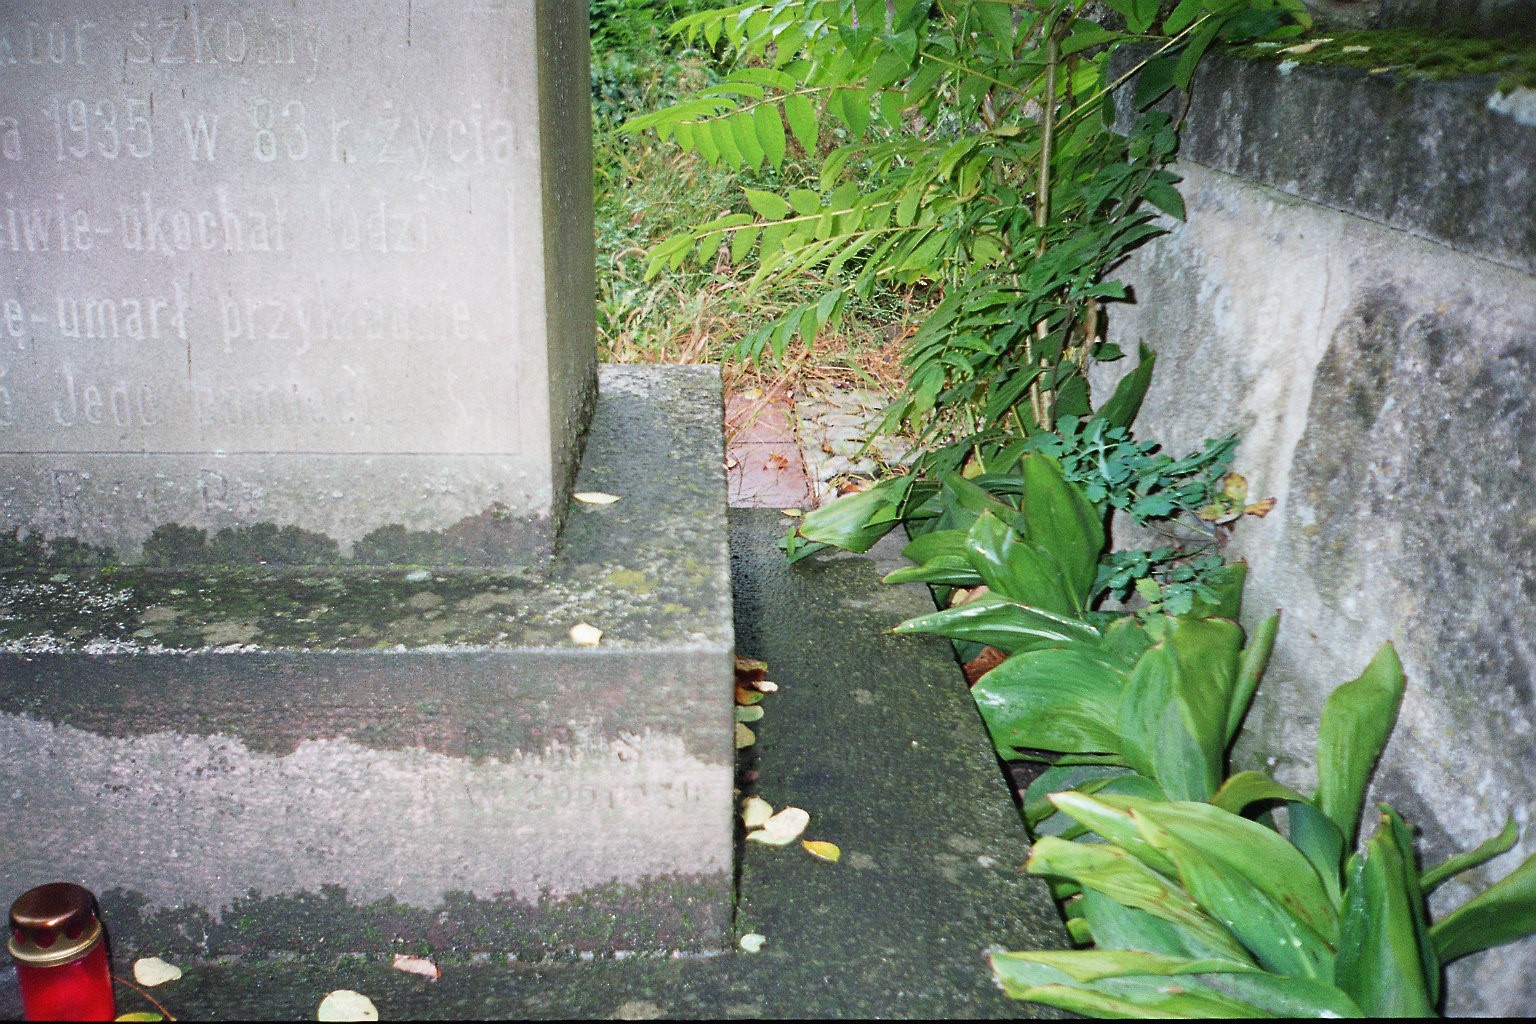 Tombstone of Amalia and Stanislav Juzw, Zaleszczyki cemetery, as of 2005.